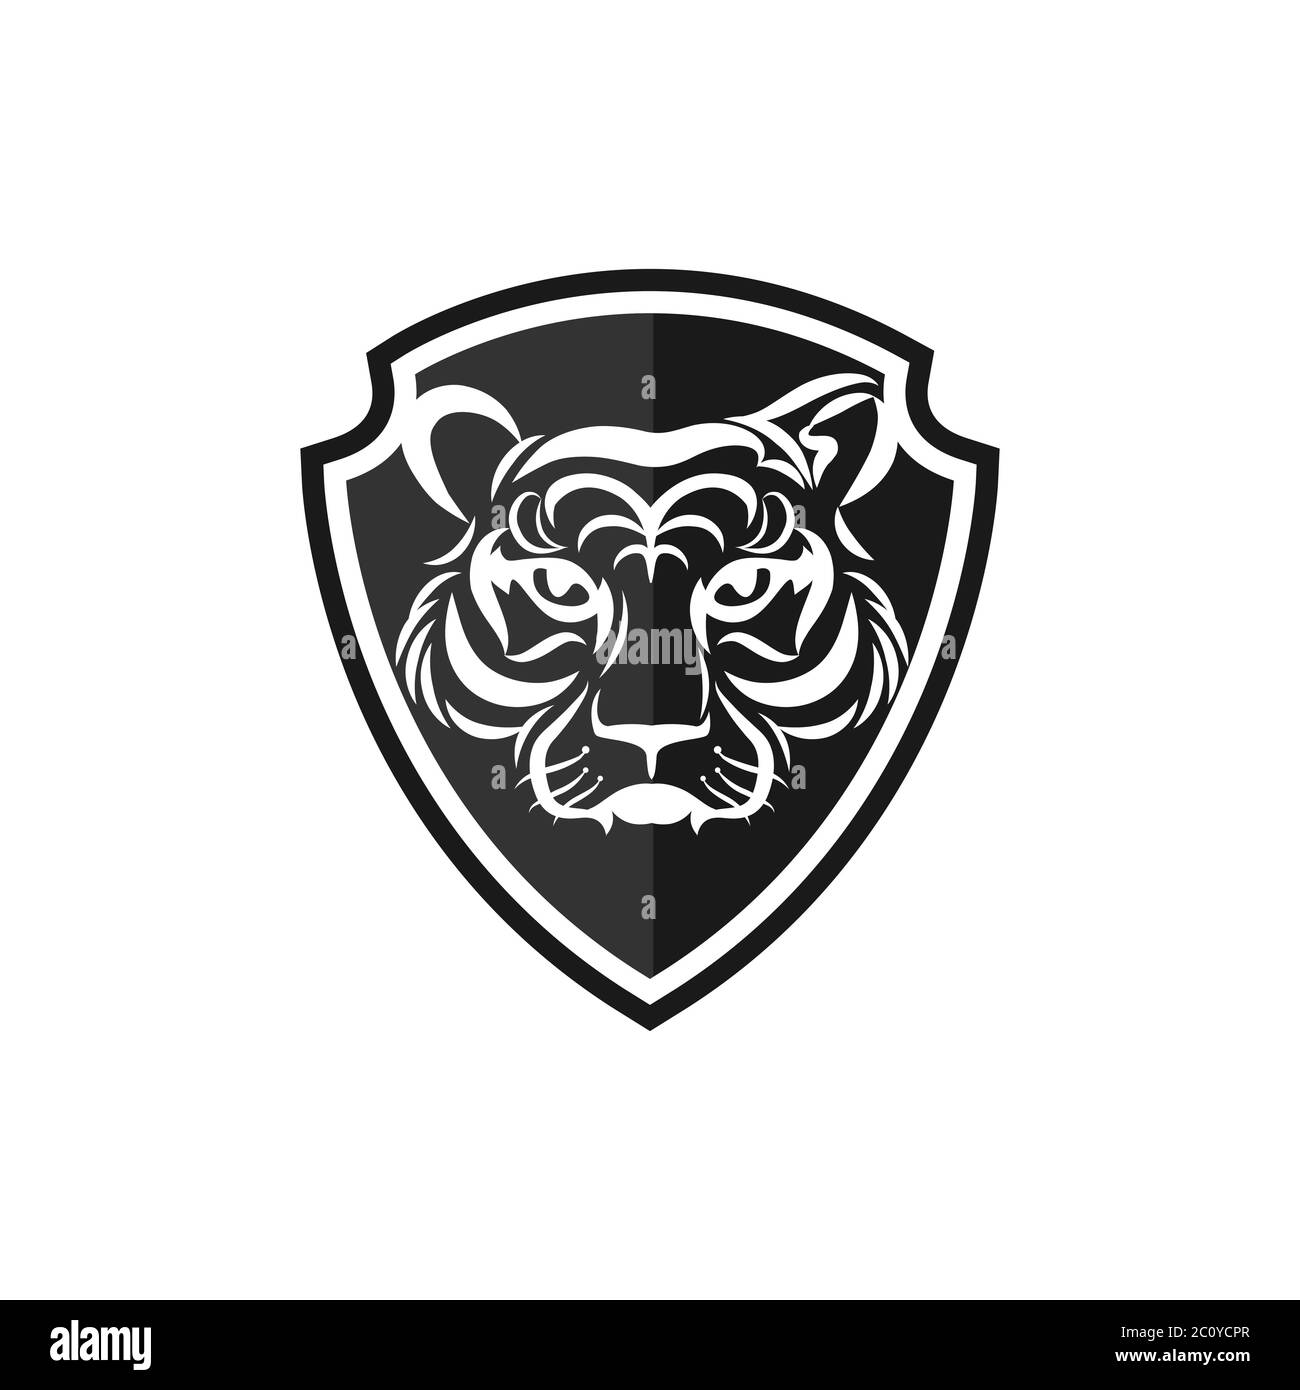 Tiger face logo emblem template mascot symbol for business or shirt design. Vector Vintage Design Element.EPS 10 Stock Vector